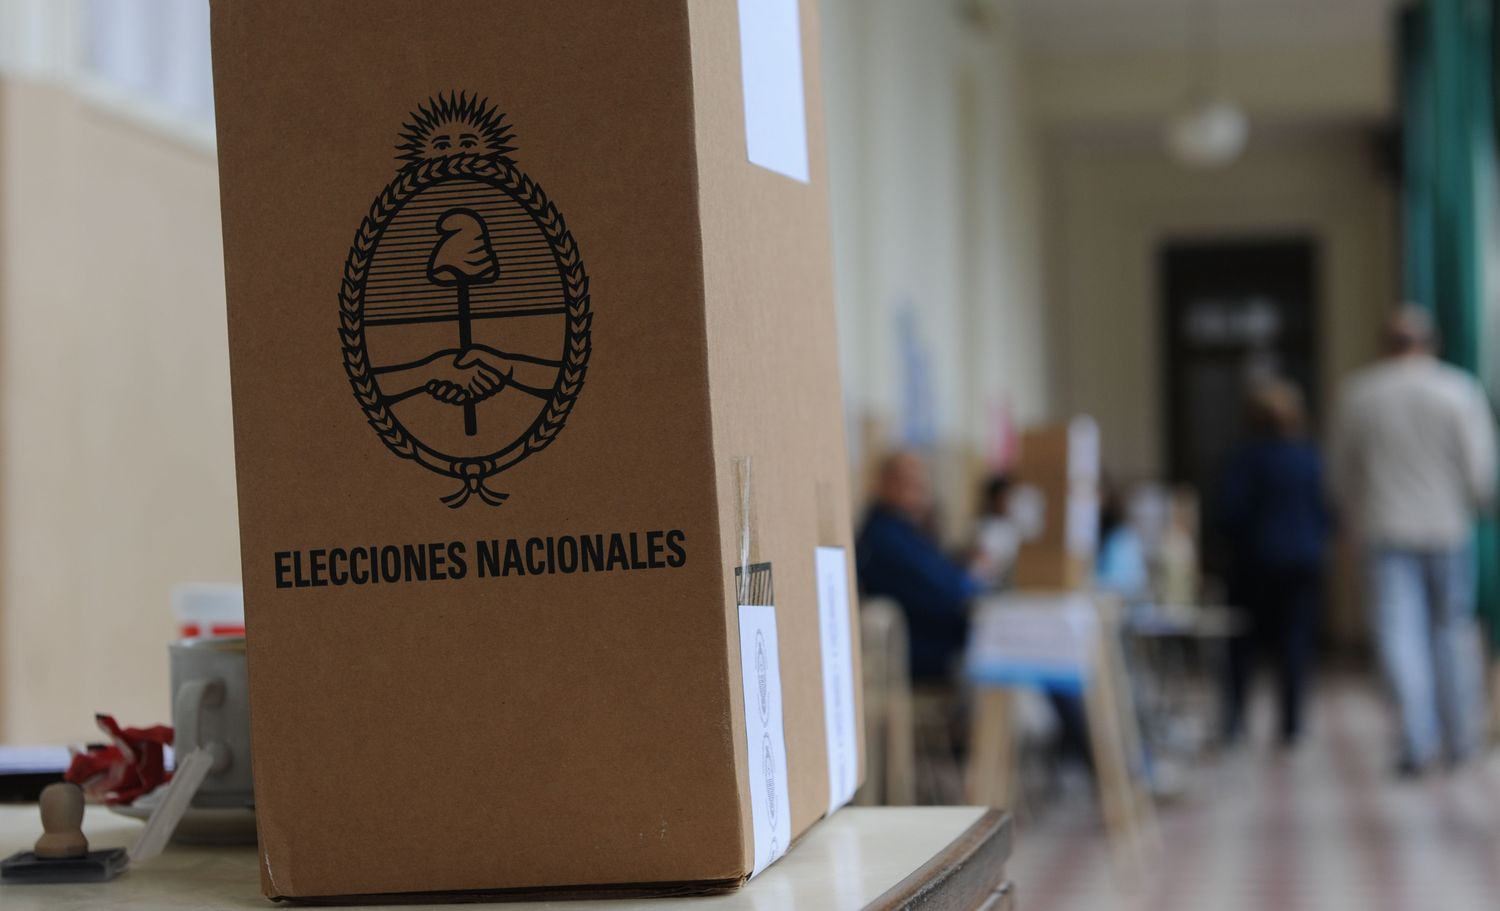 Elecciones 2015: Tras el triunfo de Urtubey, votan en Mendoza y Santa Fe